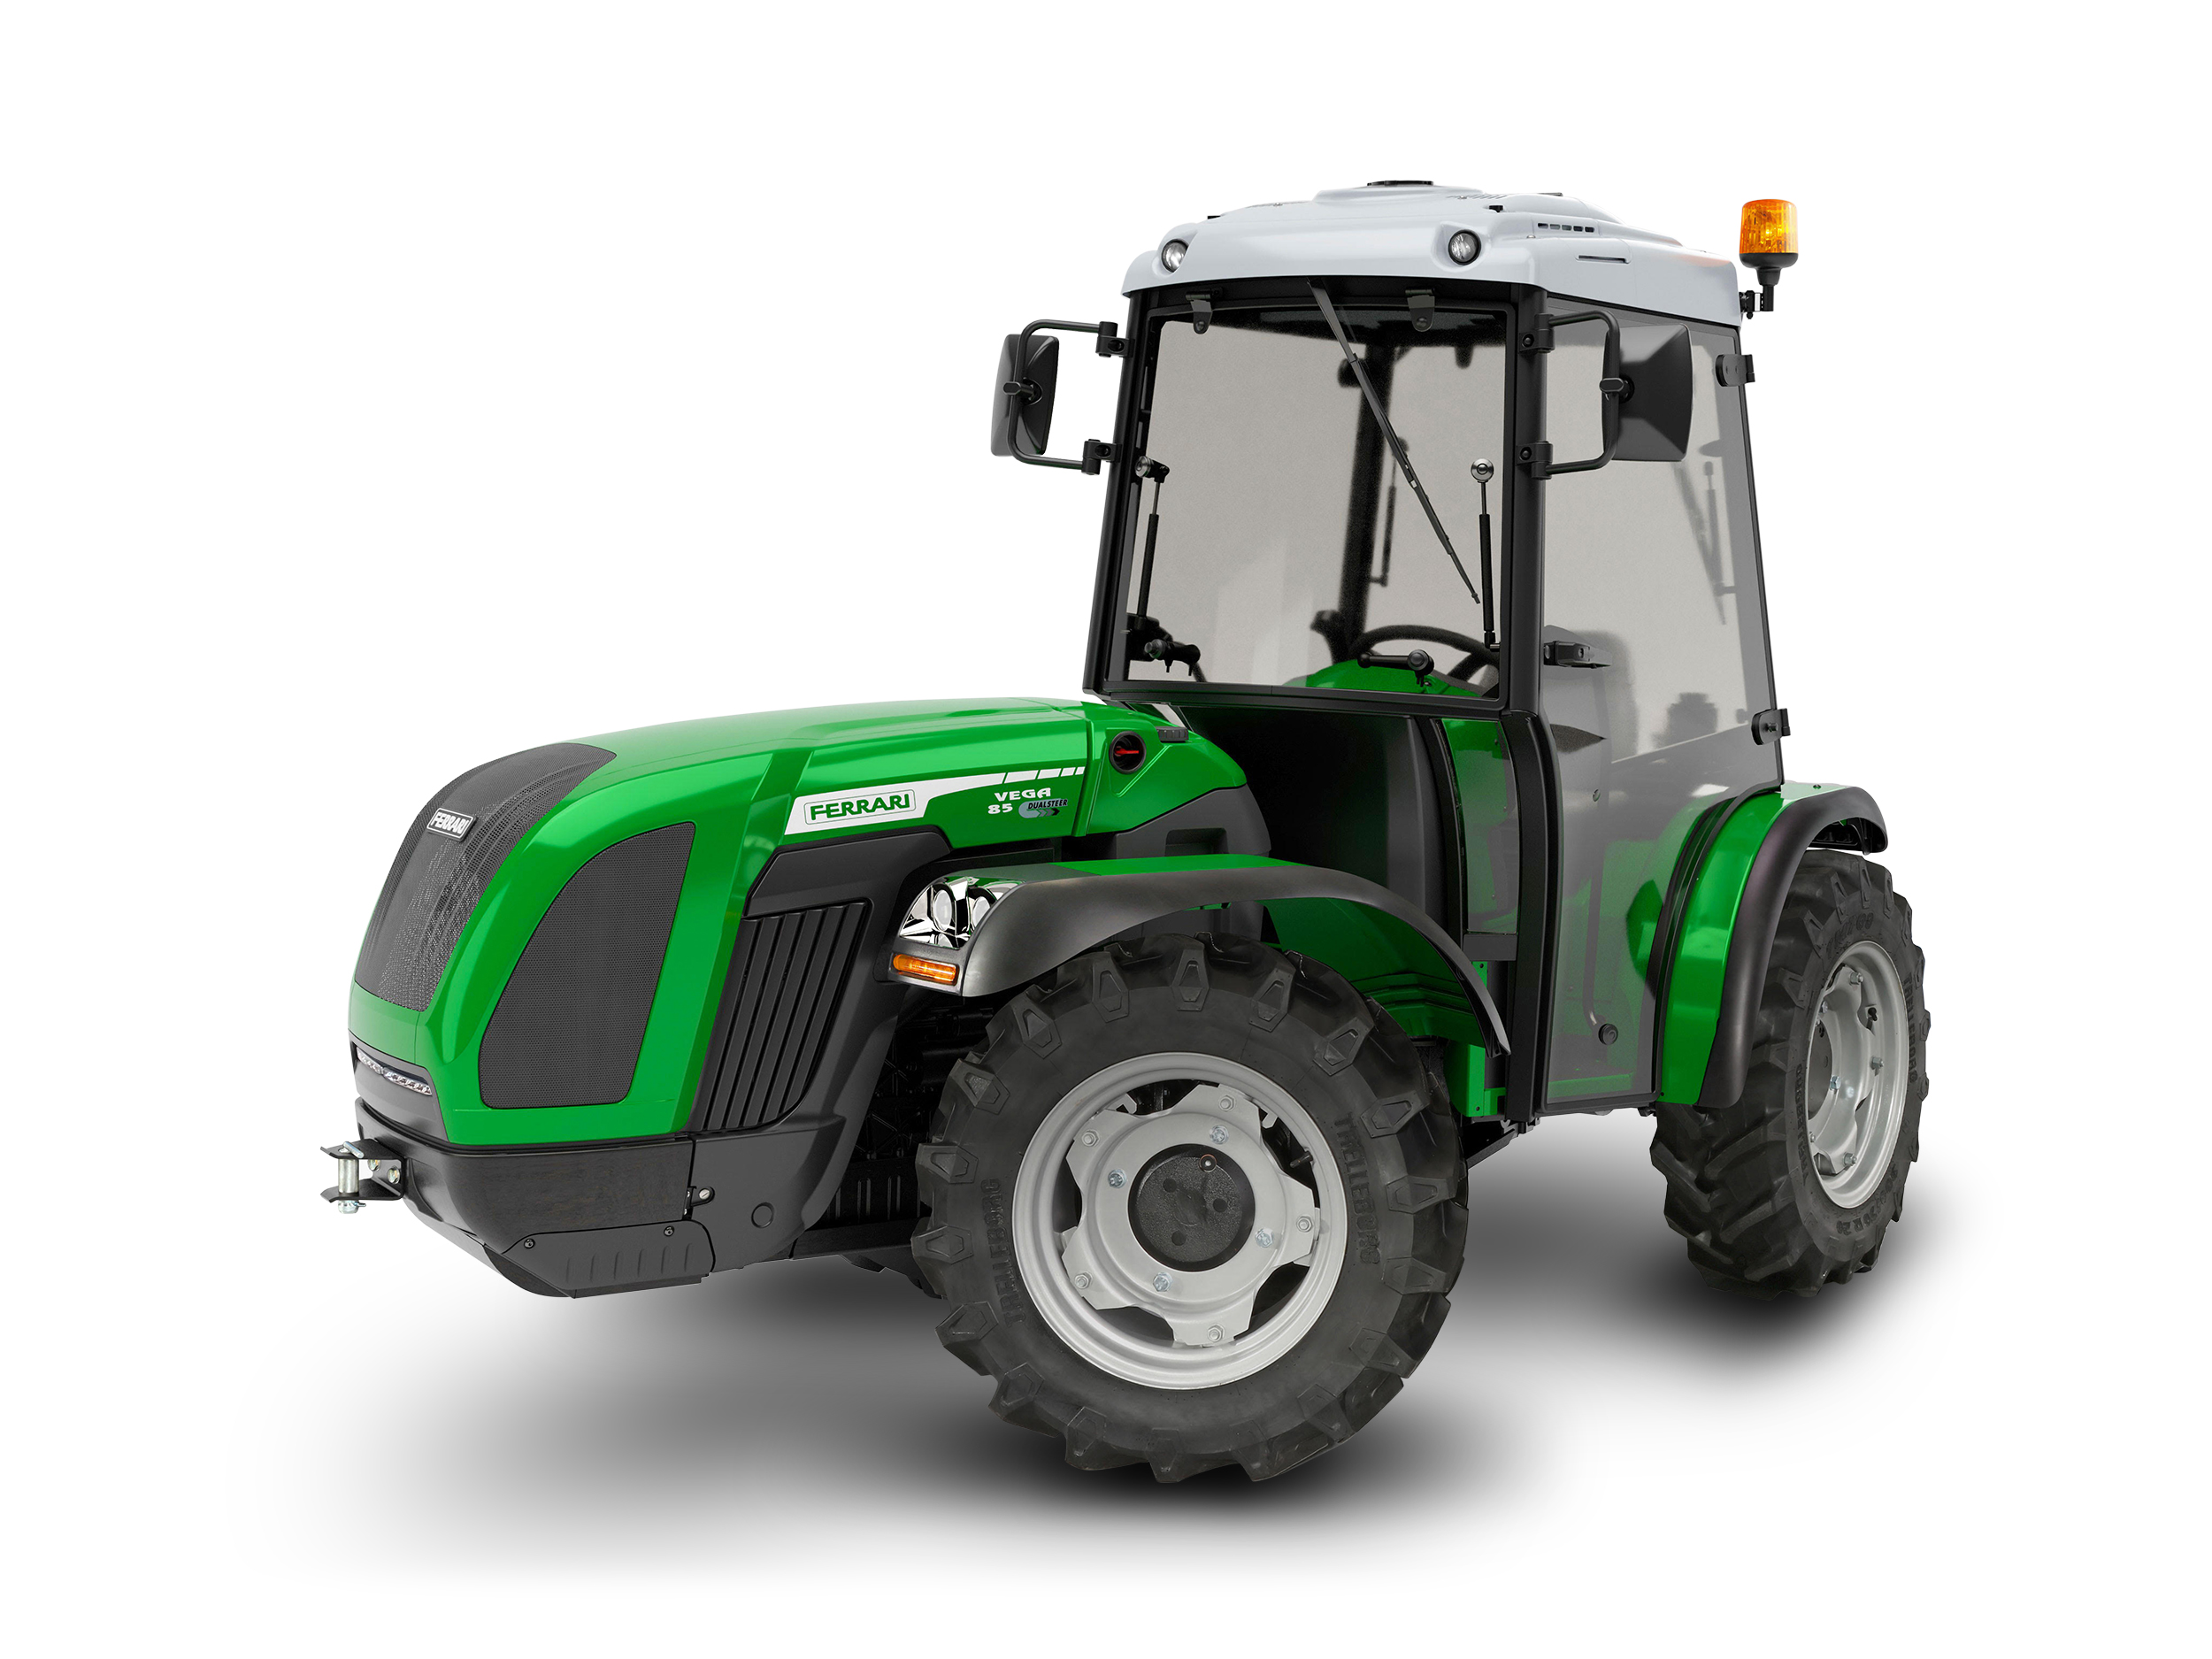 Tracteur agricole compact pour l'entretien des espaces verts, la viabilité hivernale - ferrari vega 85 ar reversible de 75,3 cv_0